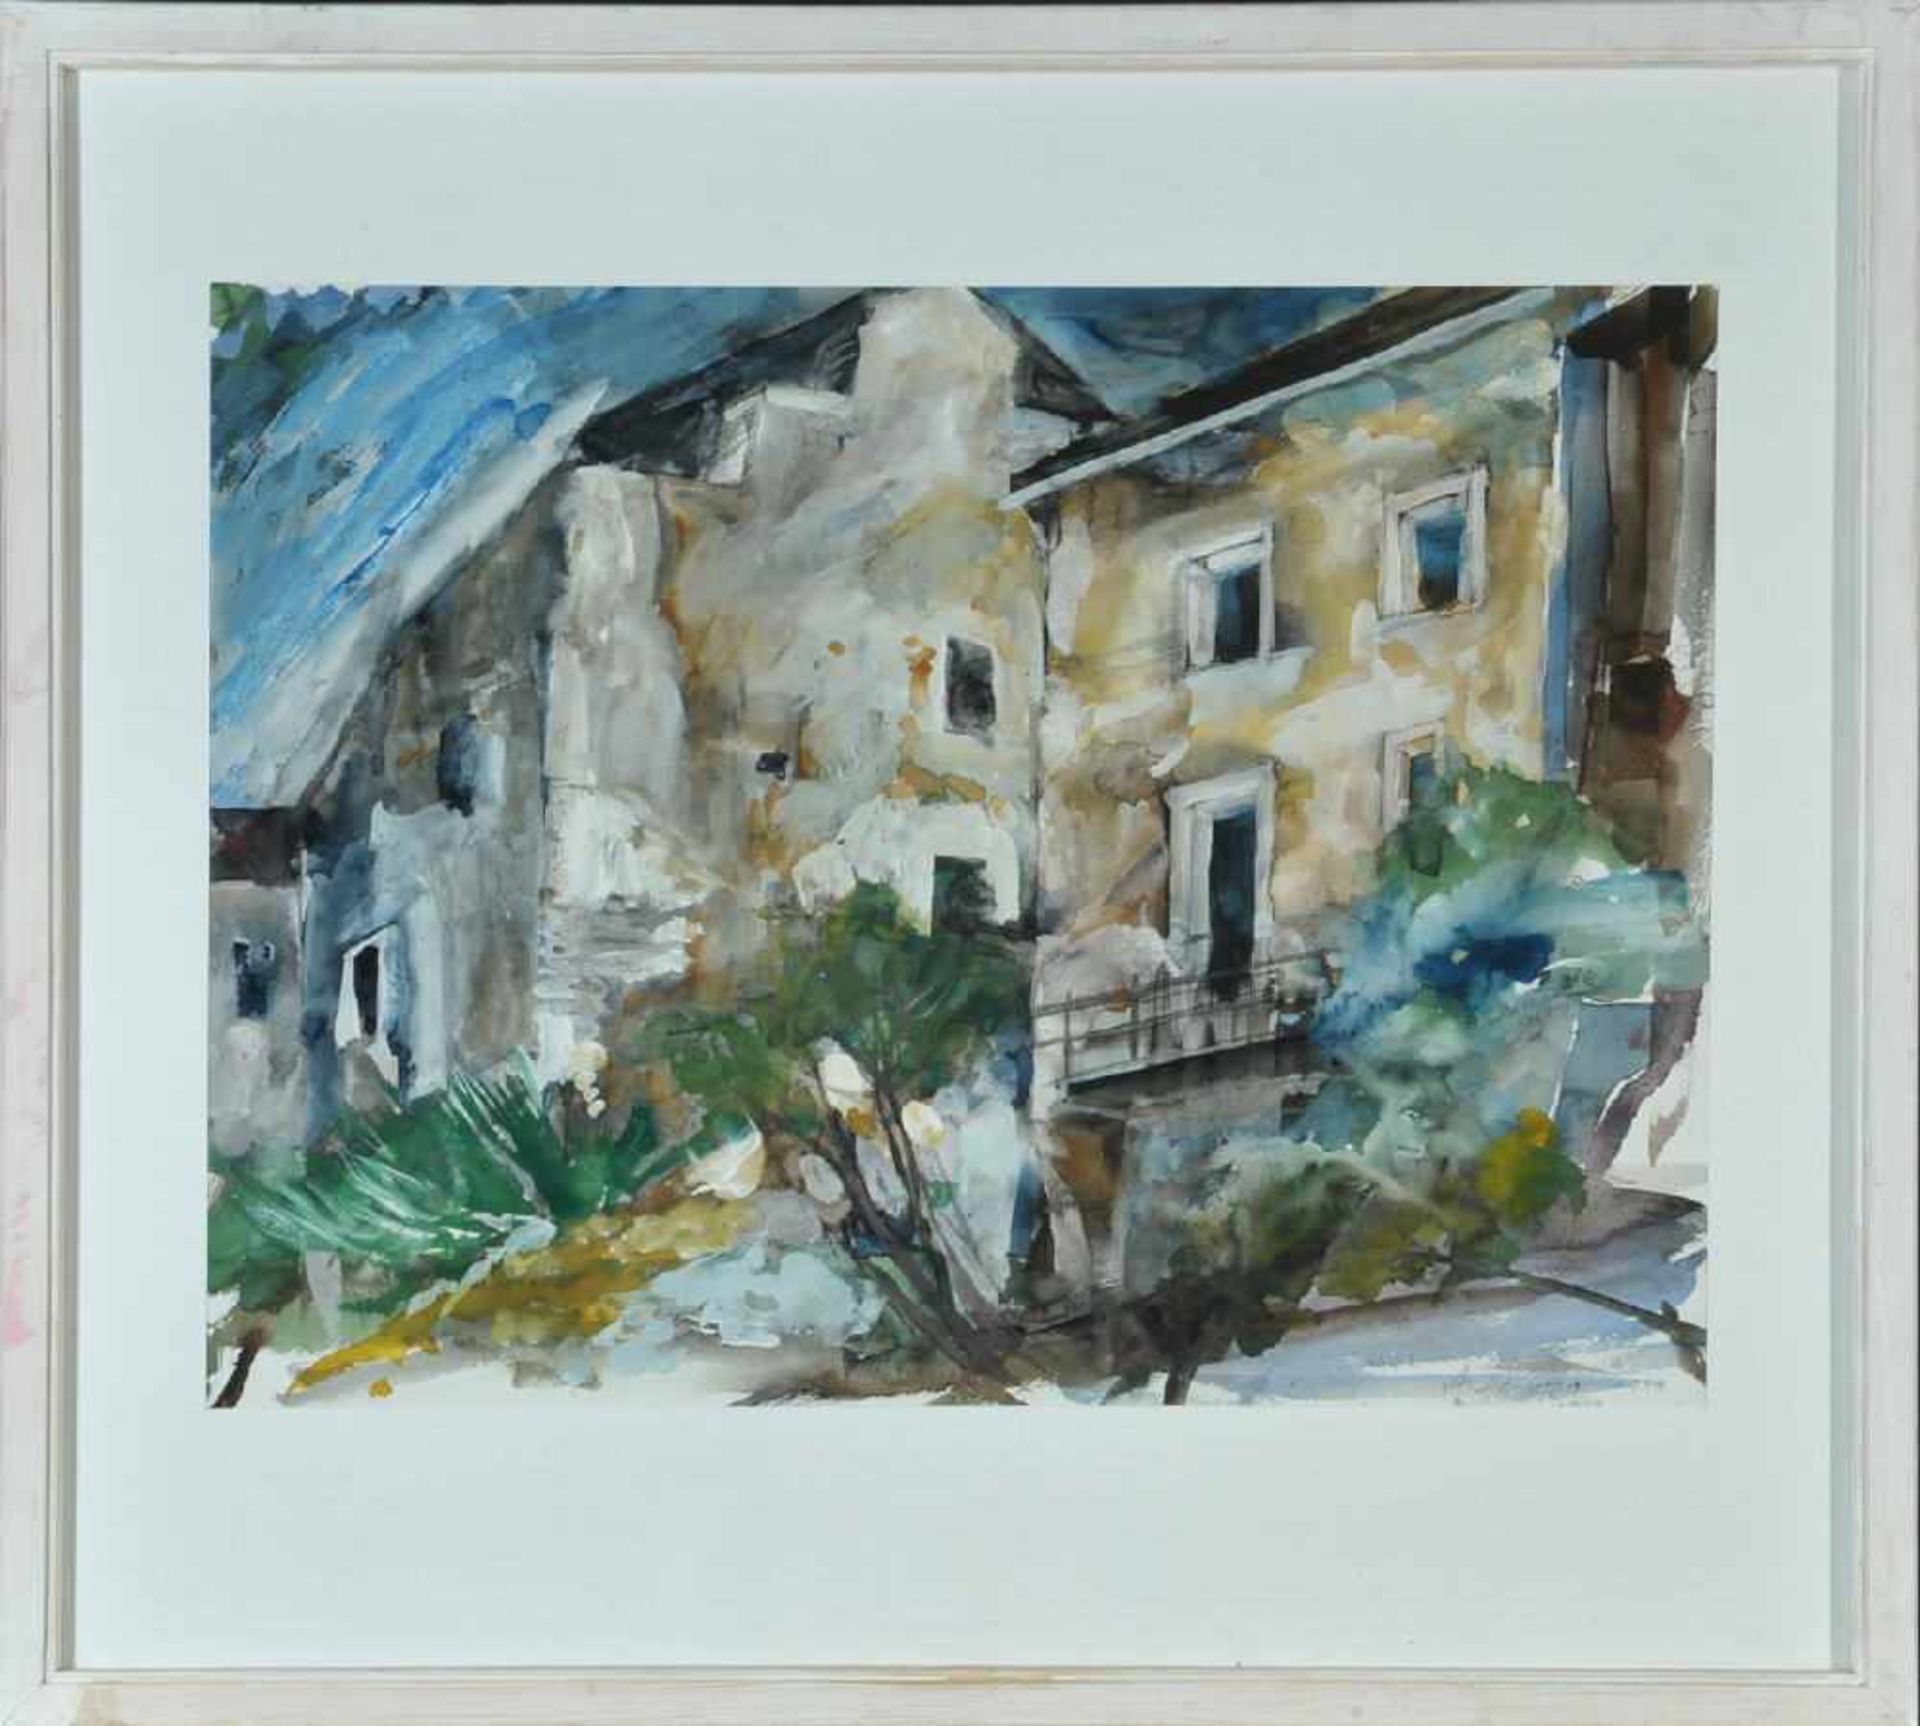 Heimhofer, Arnulf, 1930 BurgbergAquarell, 53,5 x 72,5 cm, " Häuser ", u.r. sign., dat. 1999, R,